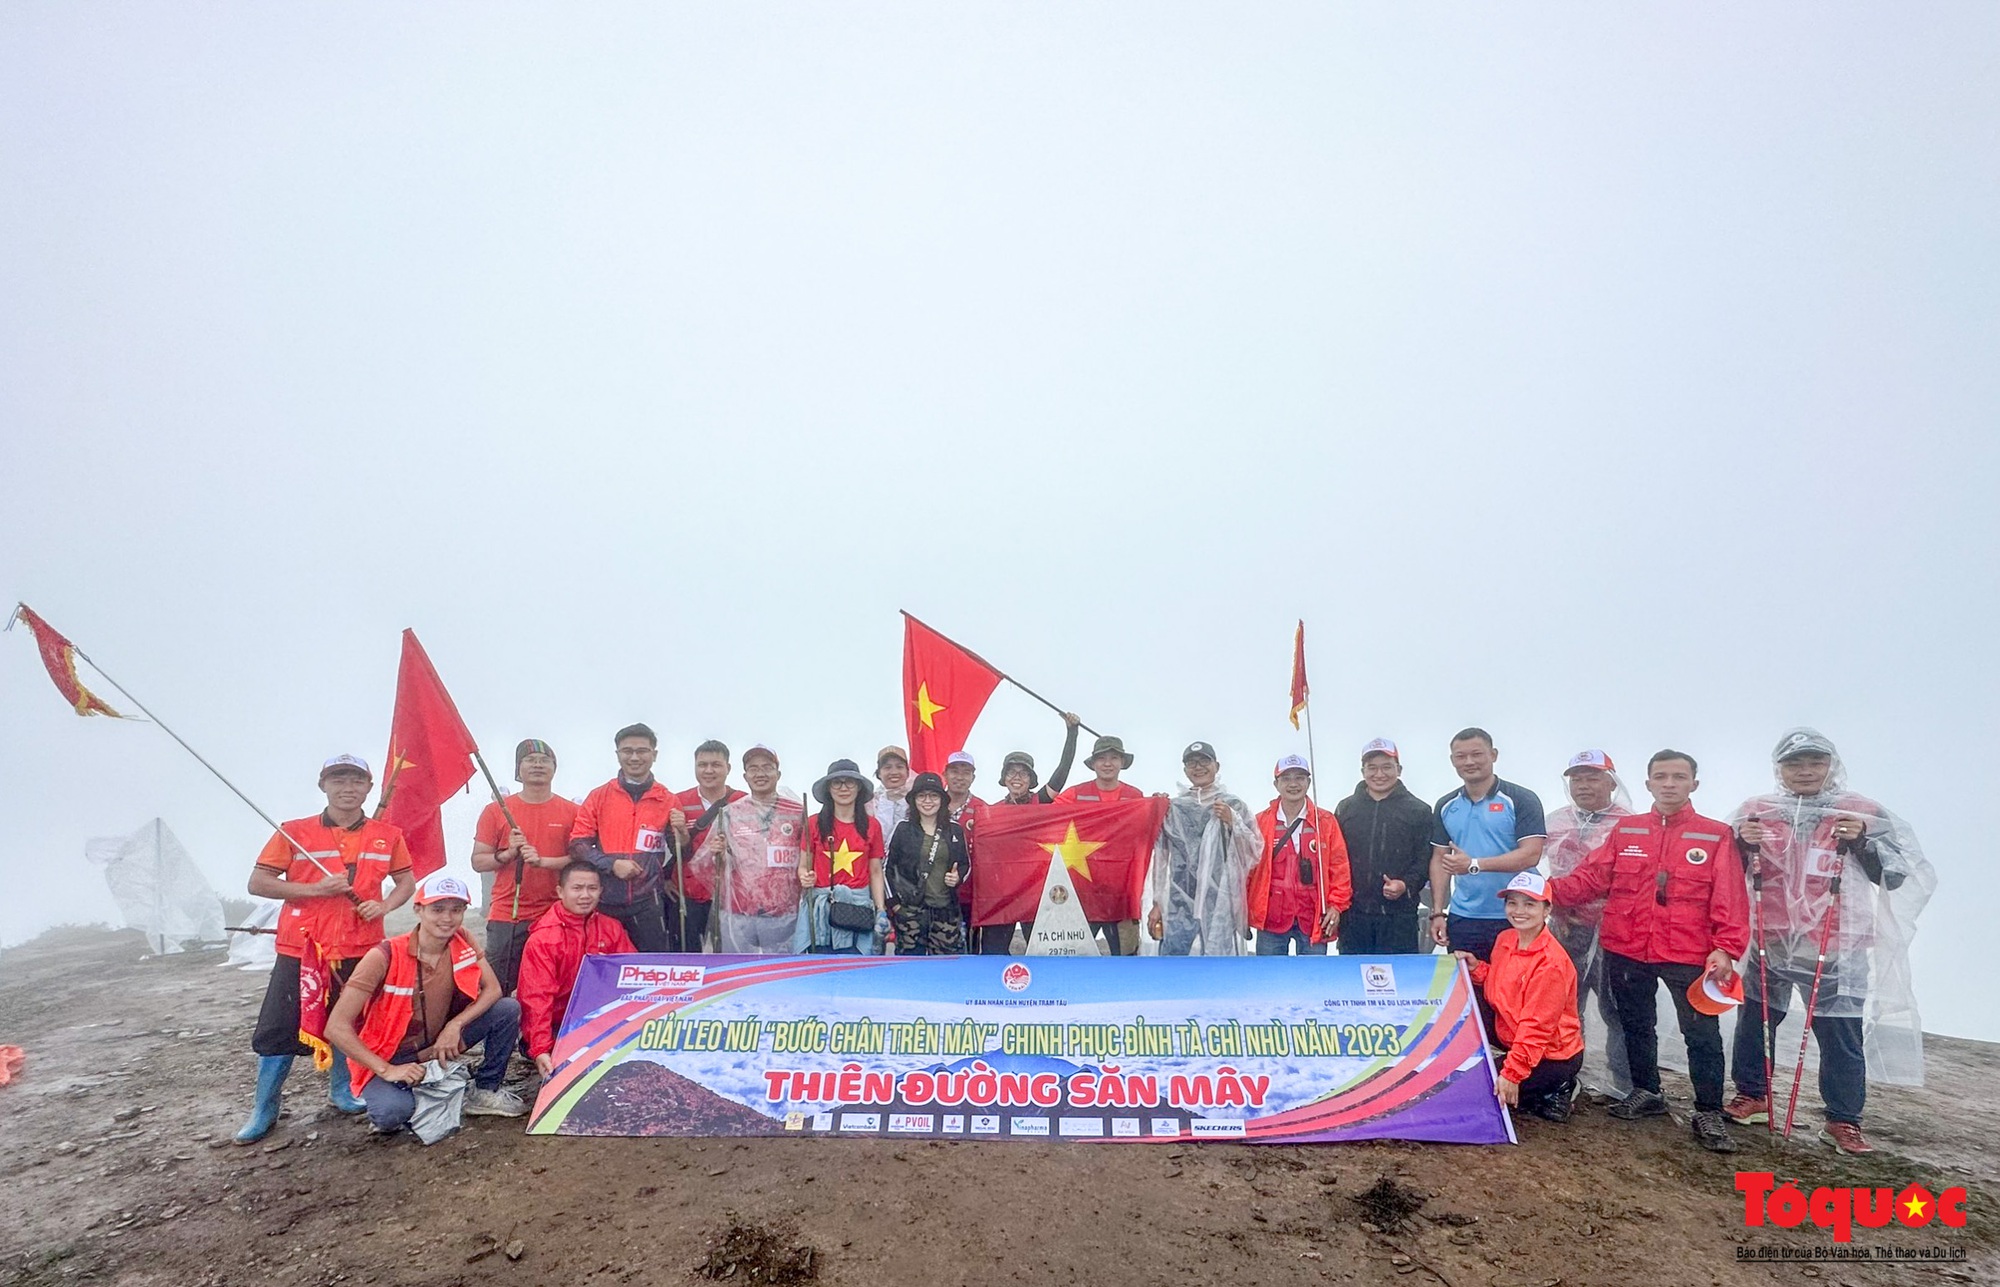 Hơn 100 nhà báo, phóng viên chinh phục đỉnh Tà Chì Nhù ở độ cao 2927m - Ảnh 15.